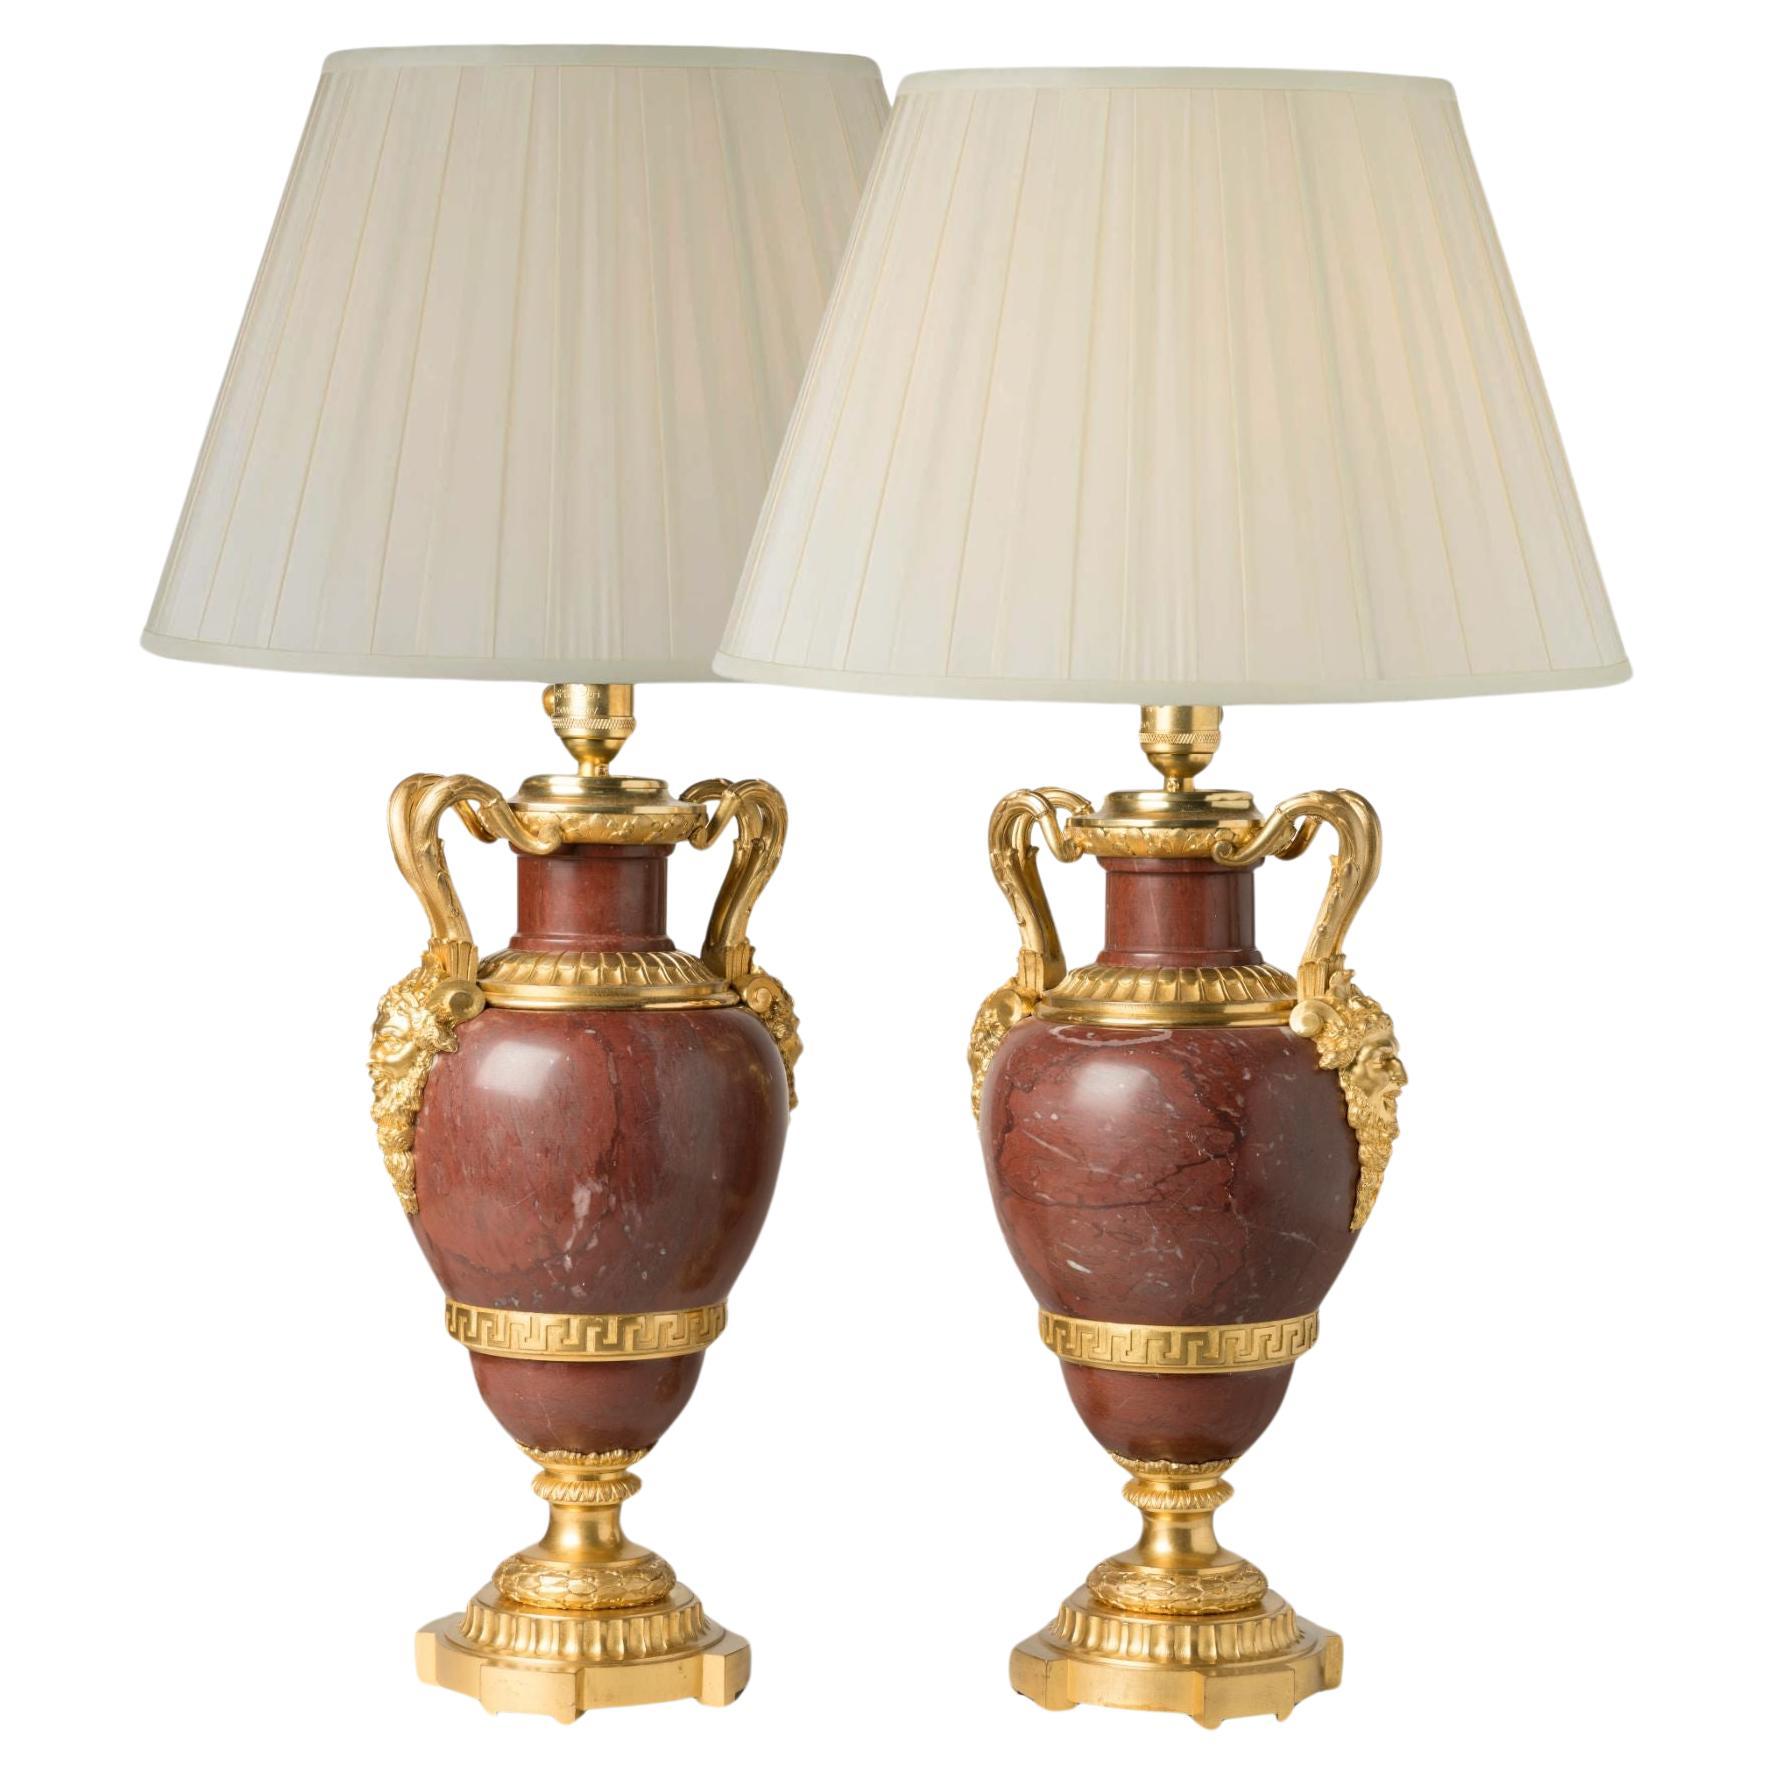 Paire de lampes anciennes en marbre rouge du XIXe siècle avec montures en bronze doré